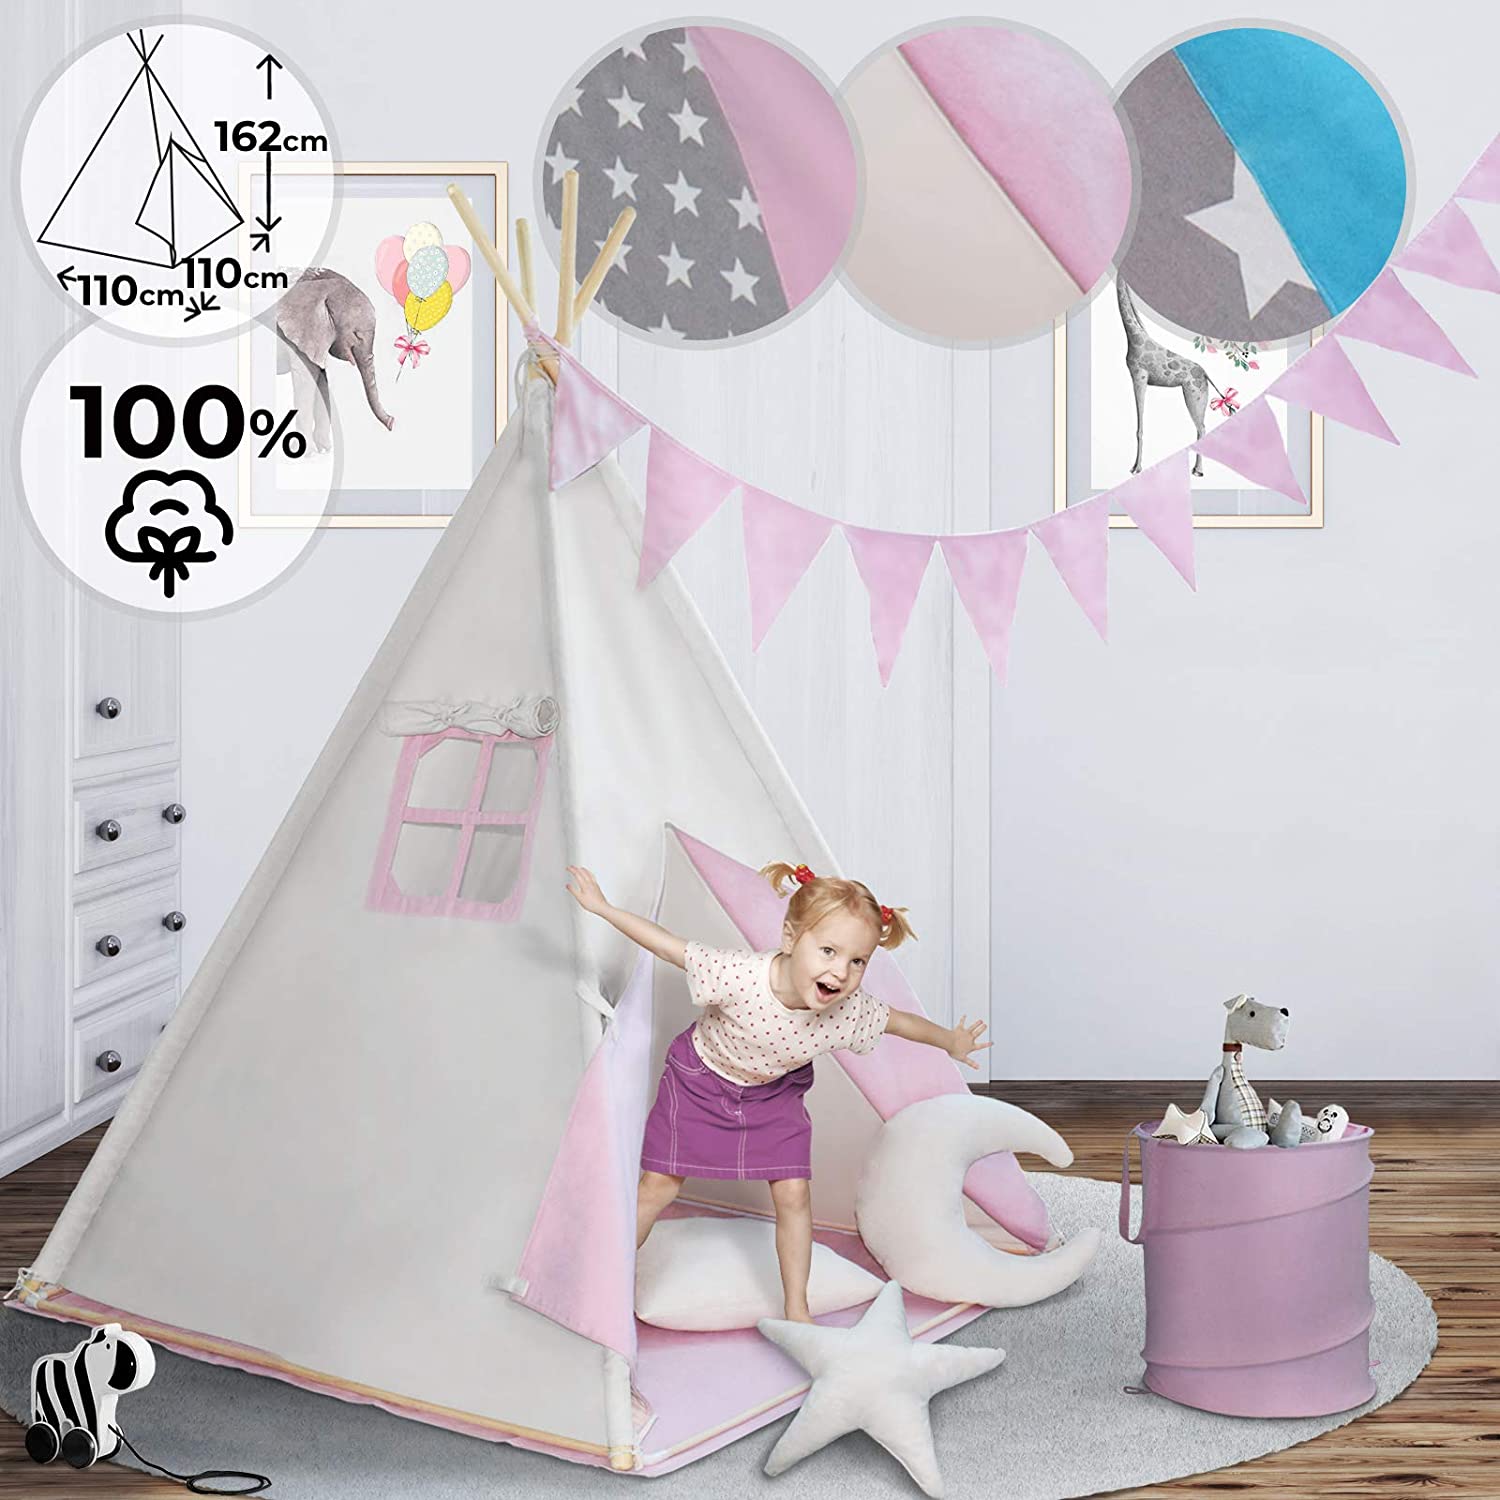 Speeltent – Tipi tent – Accessoires inbegrepen – Katoen – Beige – Roze